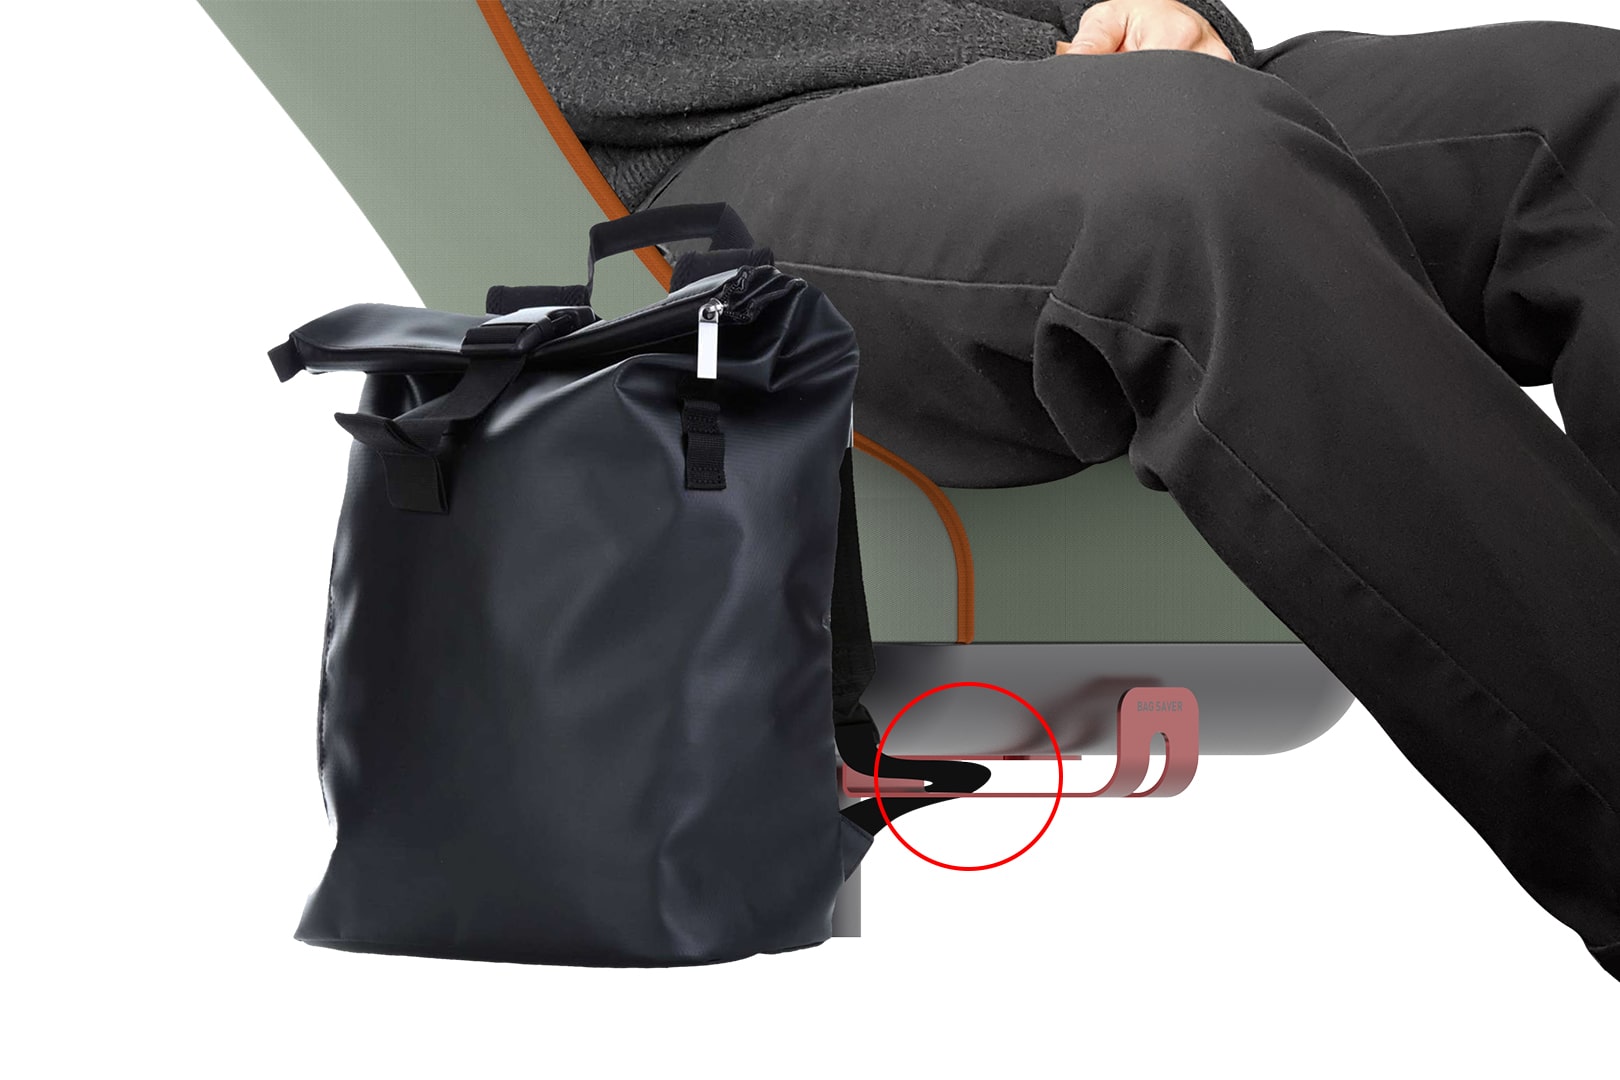 Kokon bag saver @object_designer